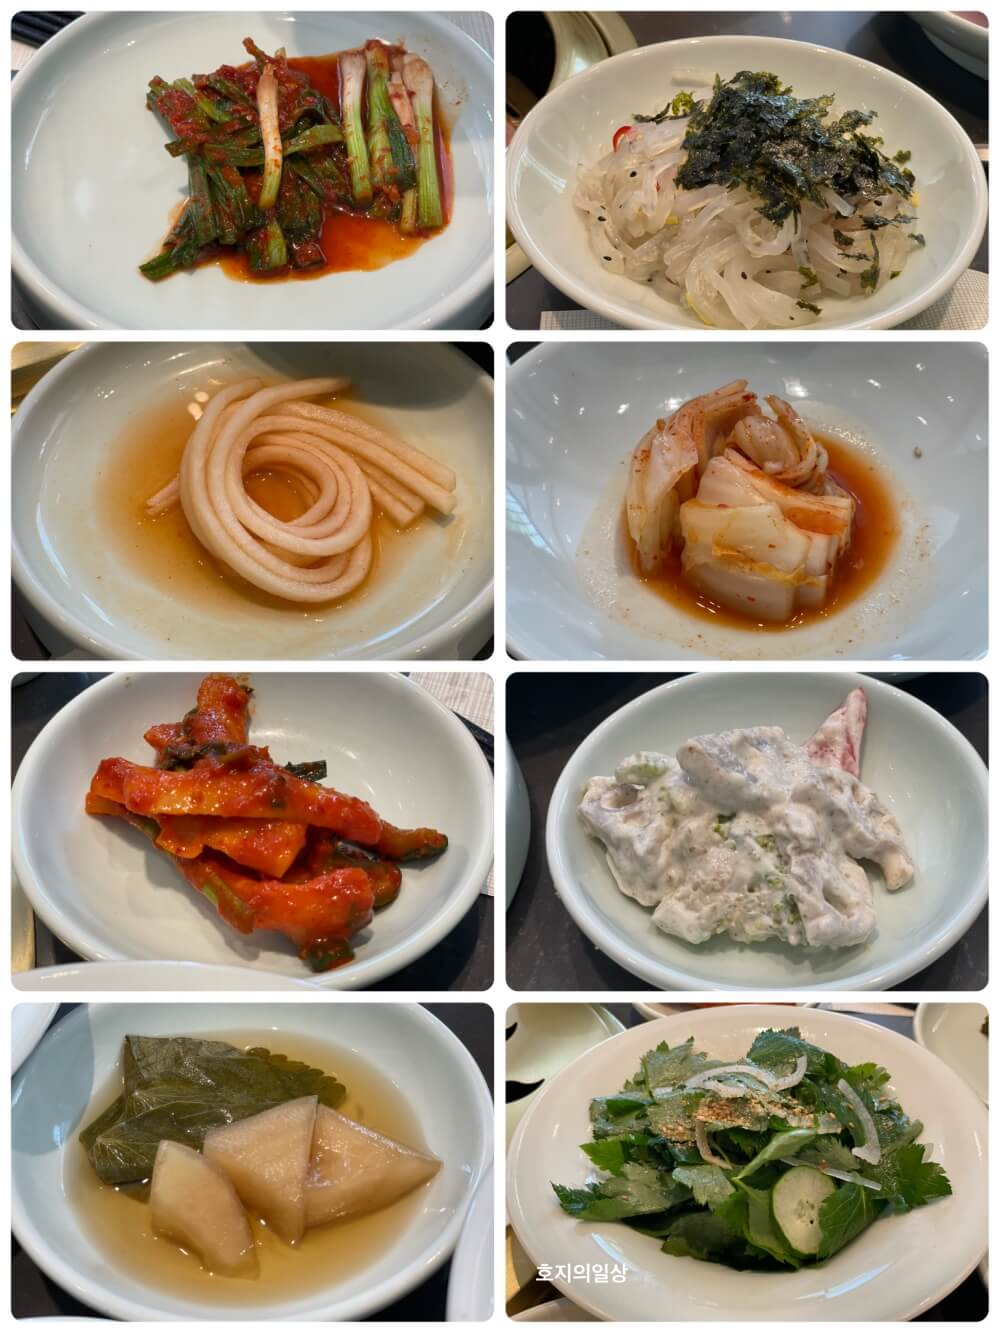 서울 강남 신사동 소갈비 맛집 삼원가든 - 탕병채 및 채소류